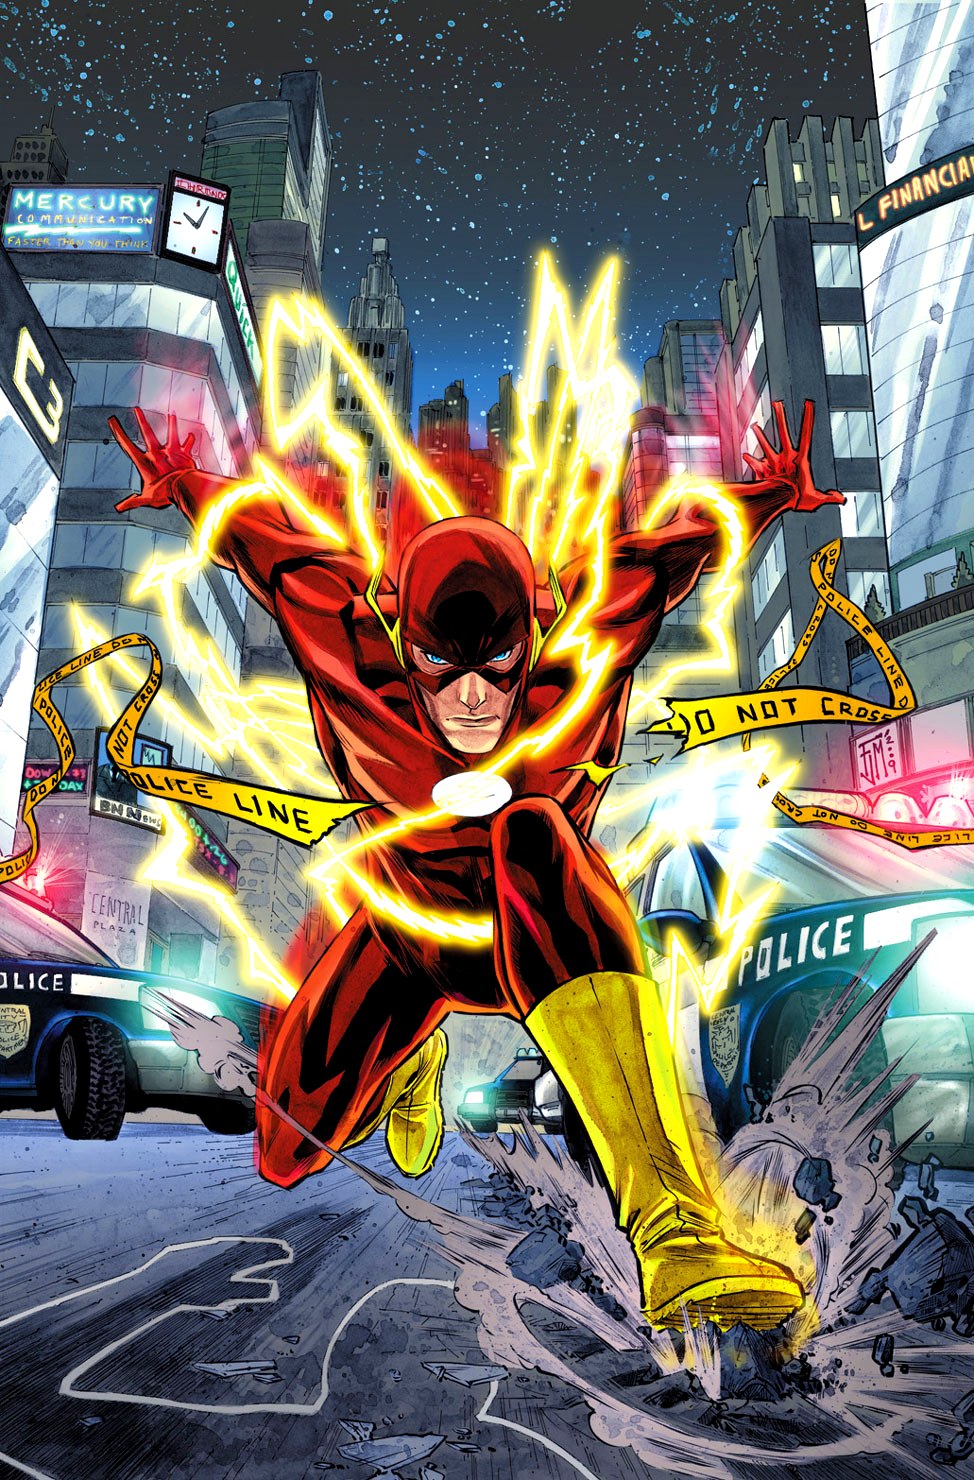 Liga da Justiça  Uniforme final do Flash no filme ainda é mantido